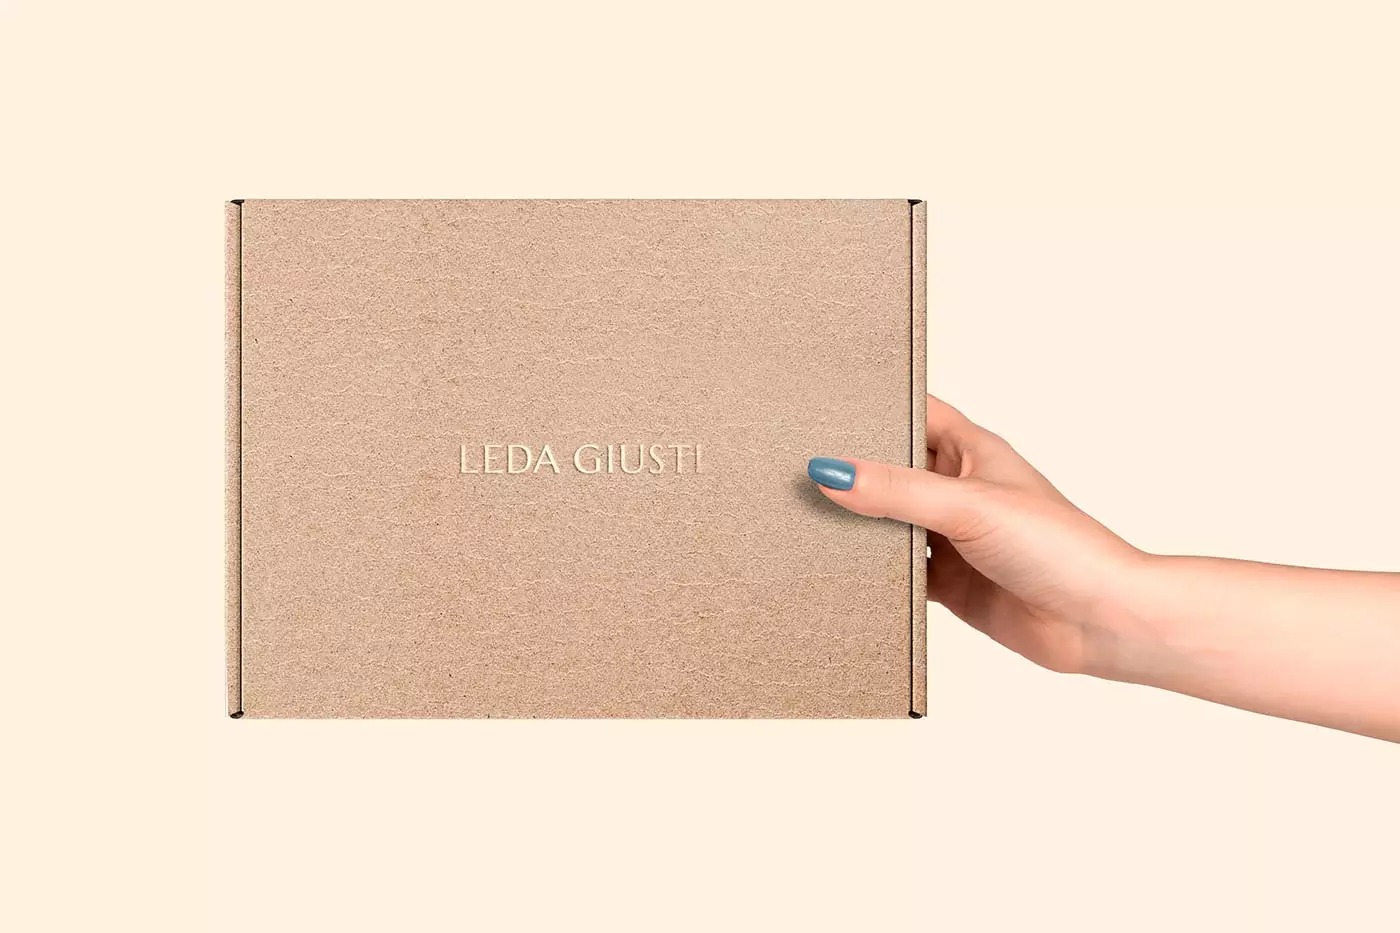 珠宝品牌Leda Giusti视觉形象设计